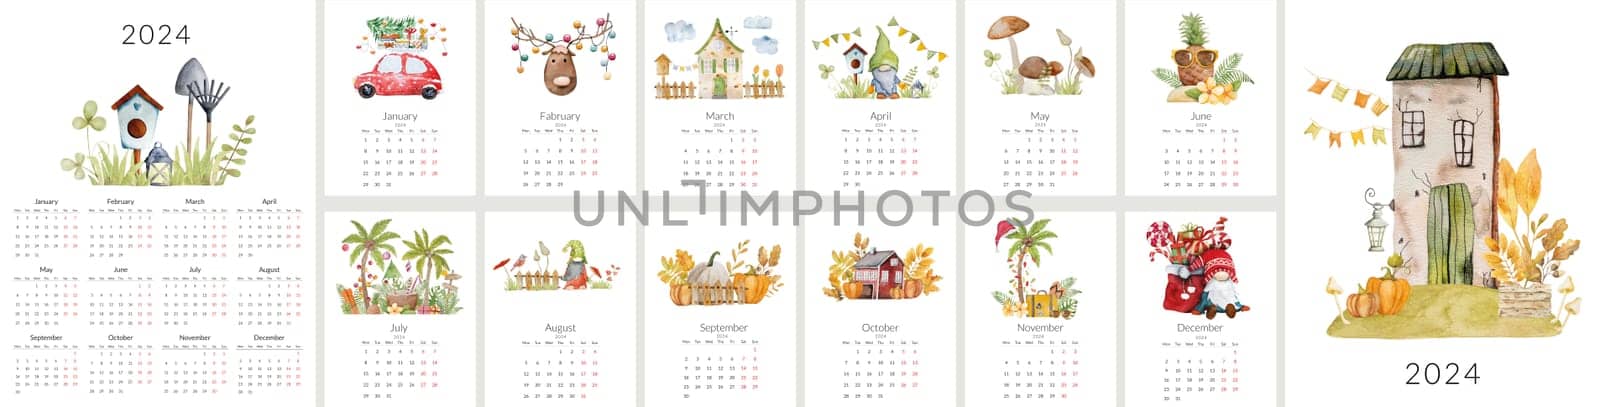 2024 year calendar template by tan4ikk1